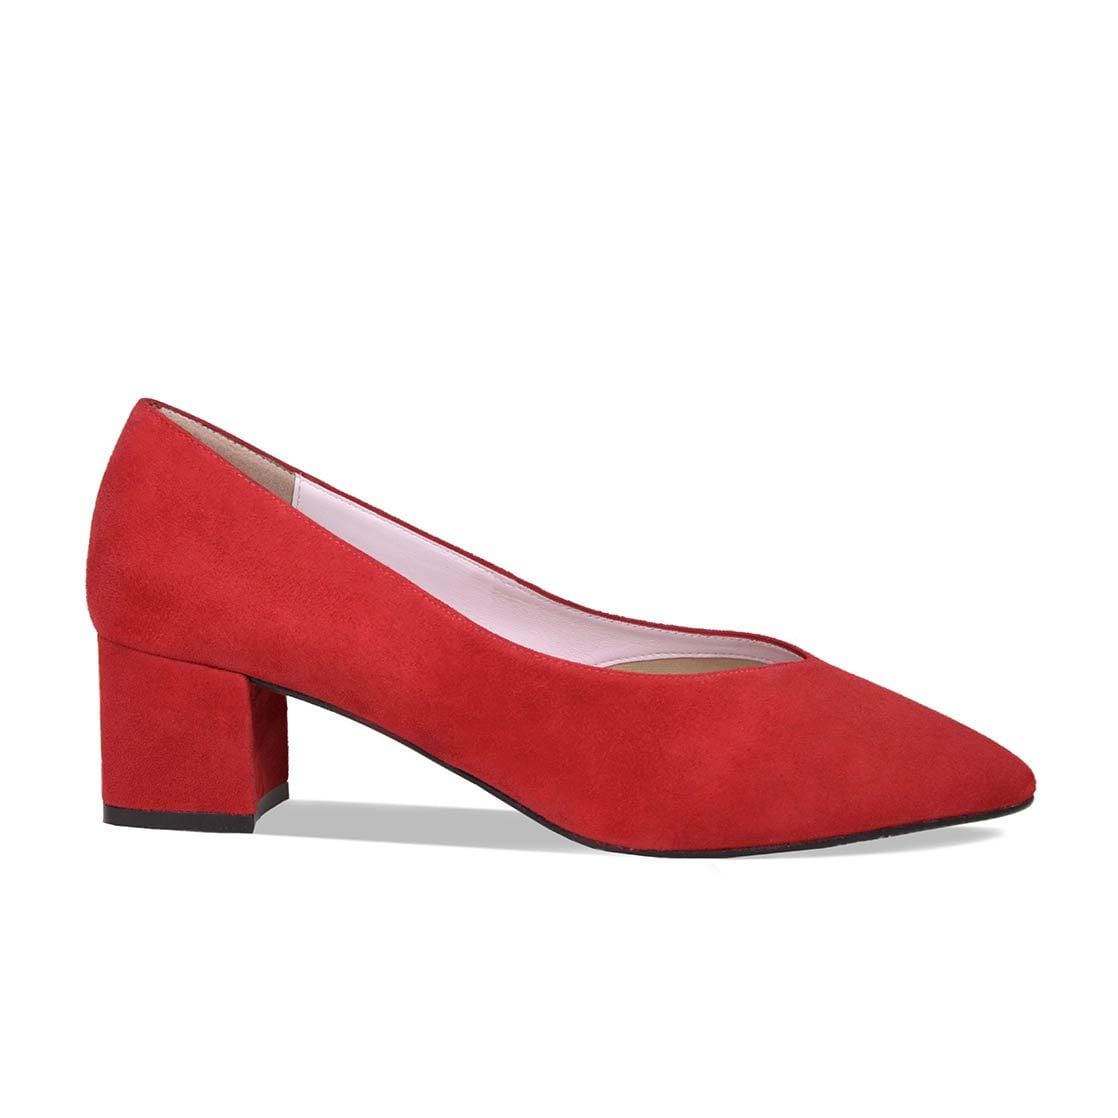 red suede block heel